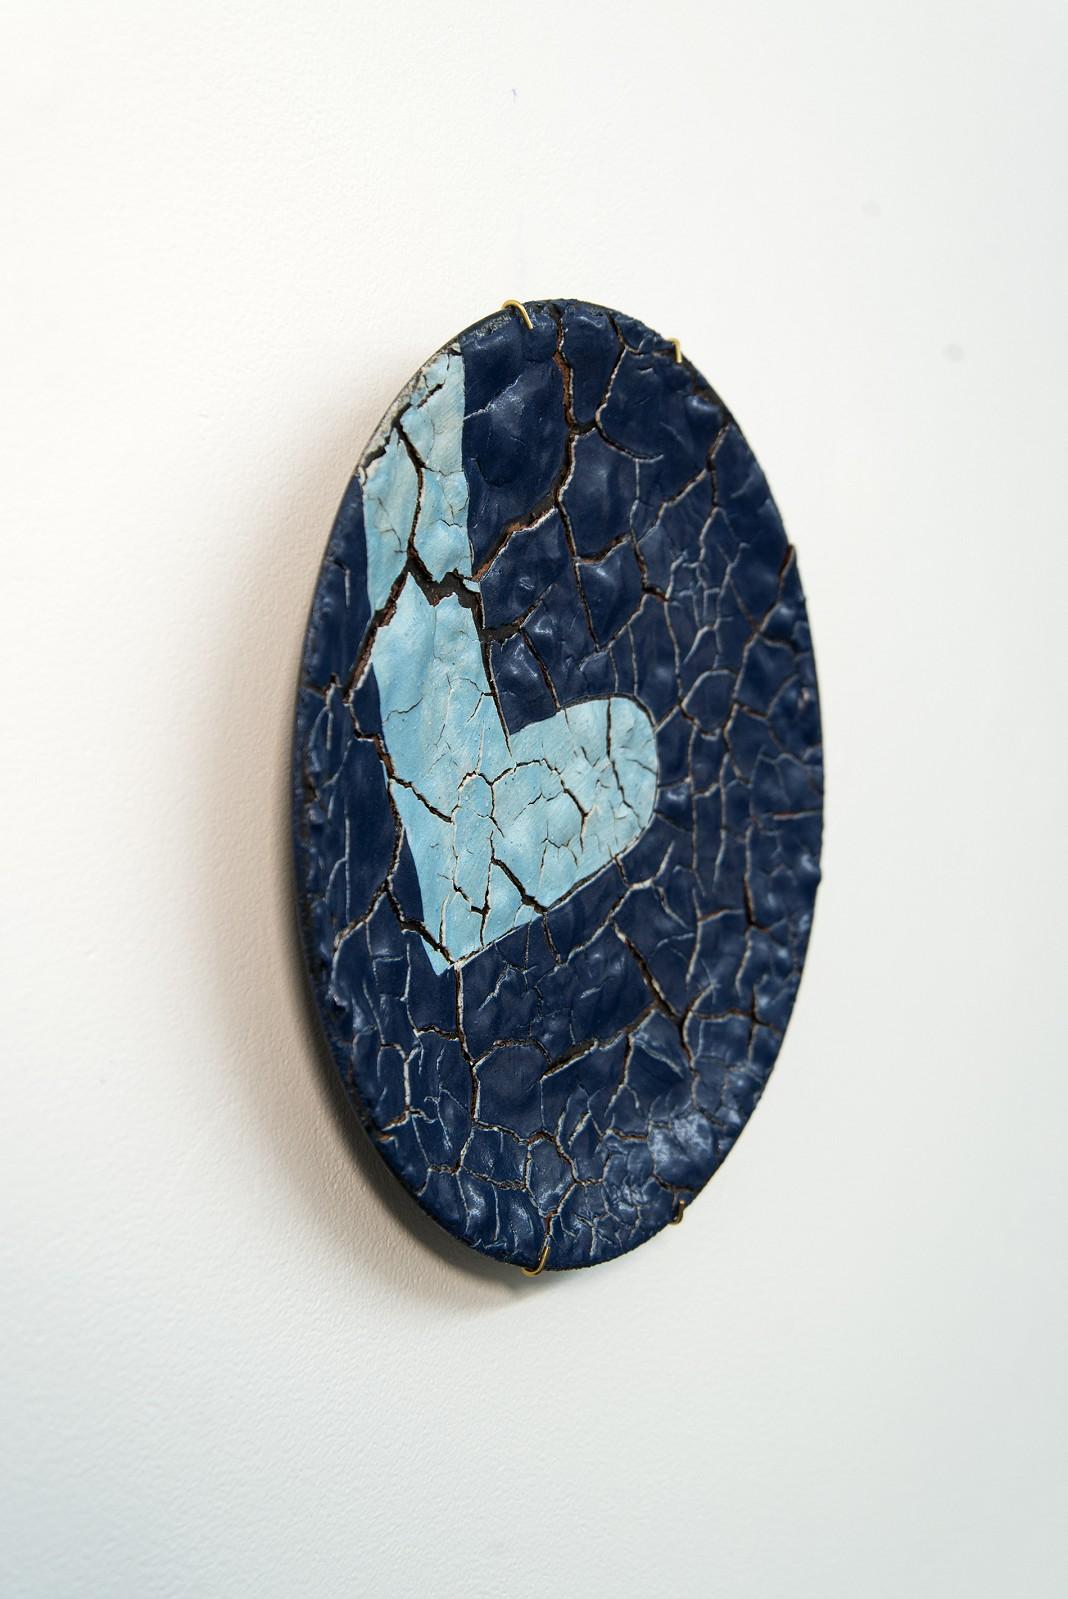 TP No 2 - blue, textured, ceramic, wall mounted circular sculpture - Sculpture by Steven Heinemann